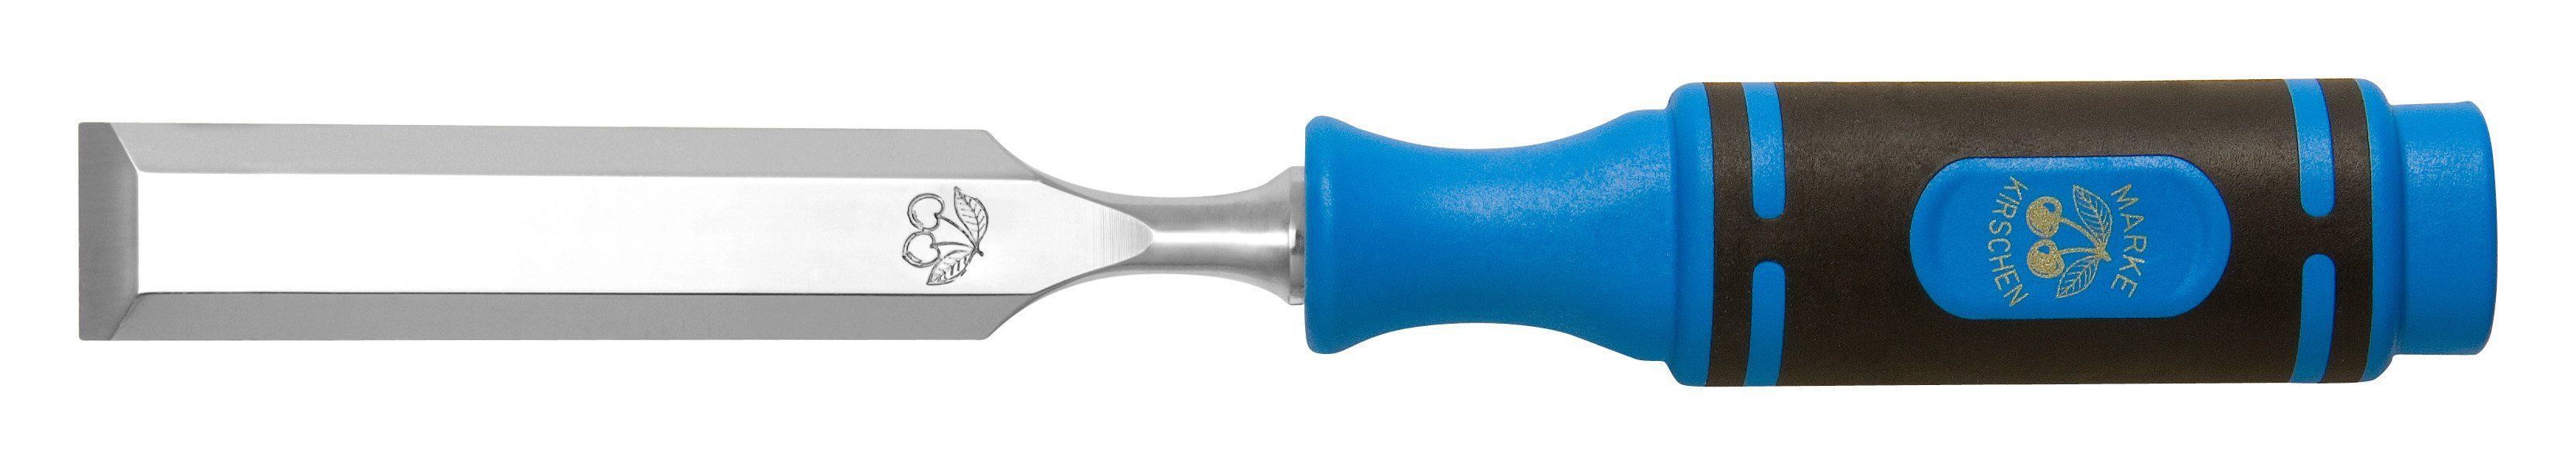 Kirschen Werkzeughalter Kirschen Stechbeitel (Stemmeisen / Stecheisen) mit 2 - K Heft 12 mm - | Stechbeitel